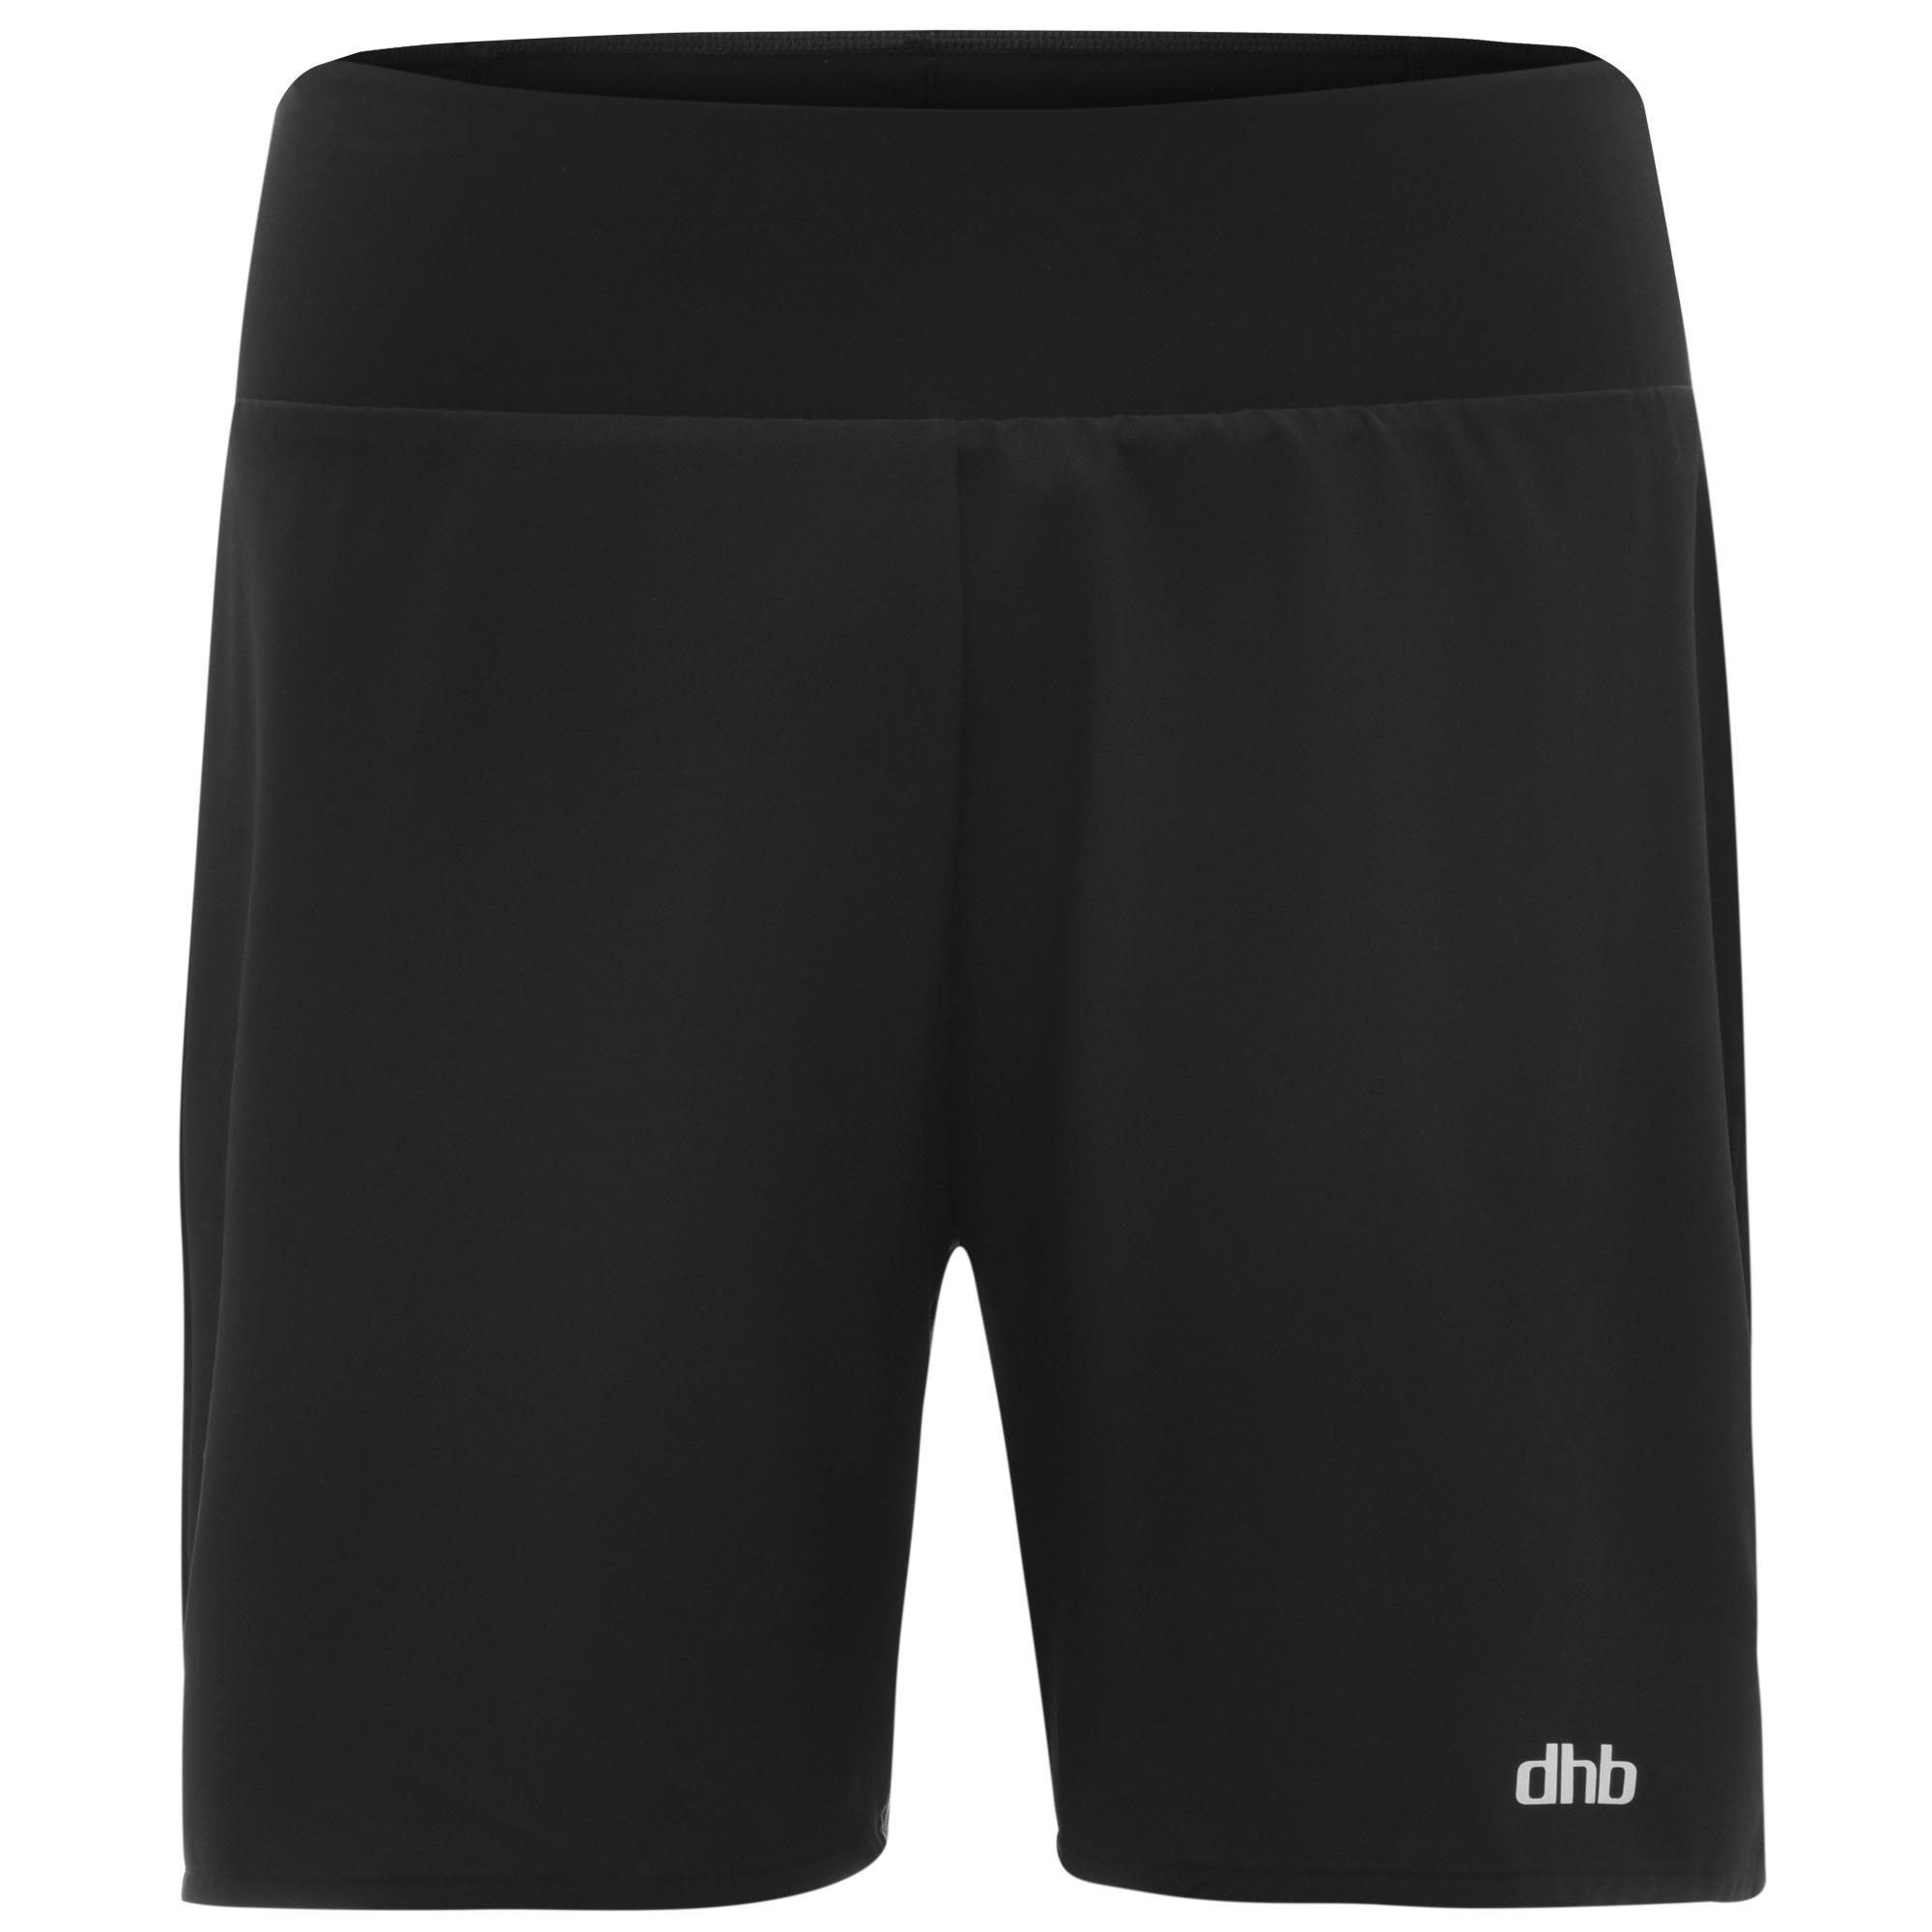 Dhb Aeron Ultra Run 5 Shorts - Black